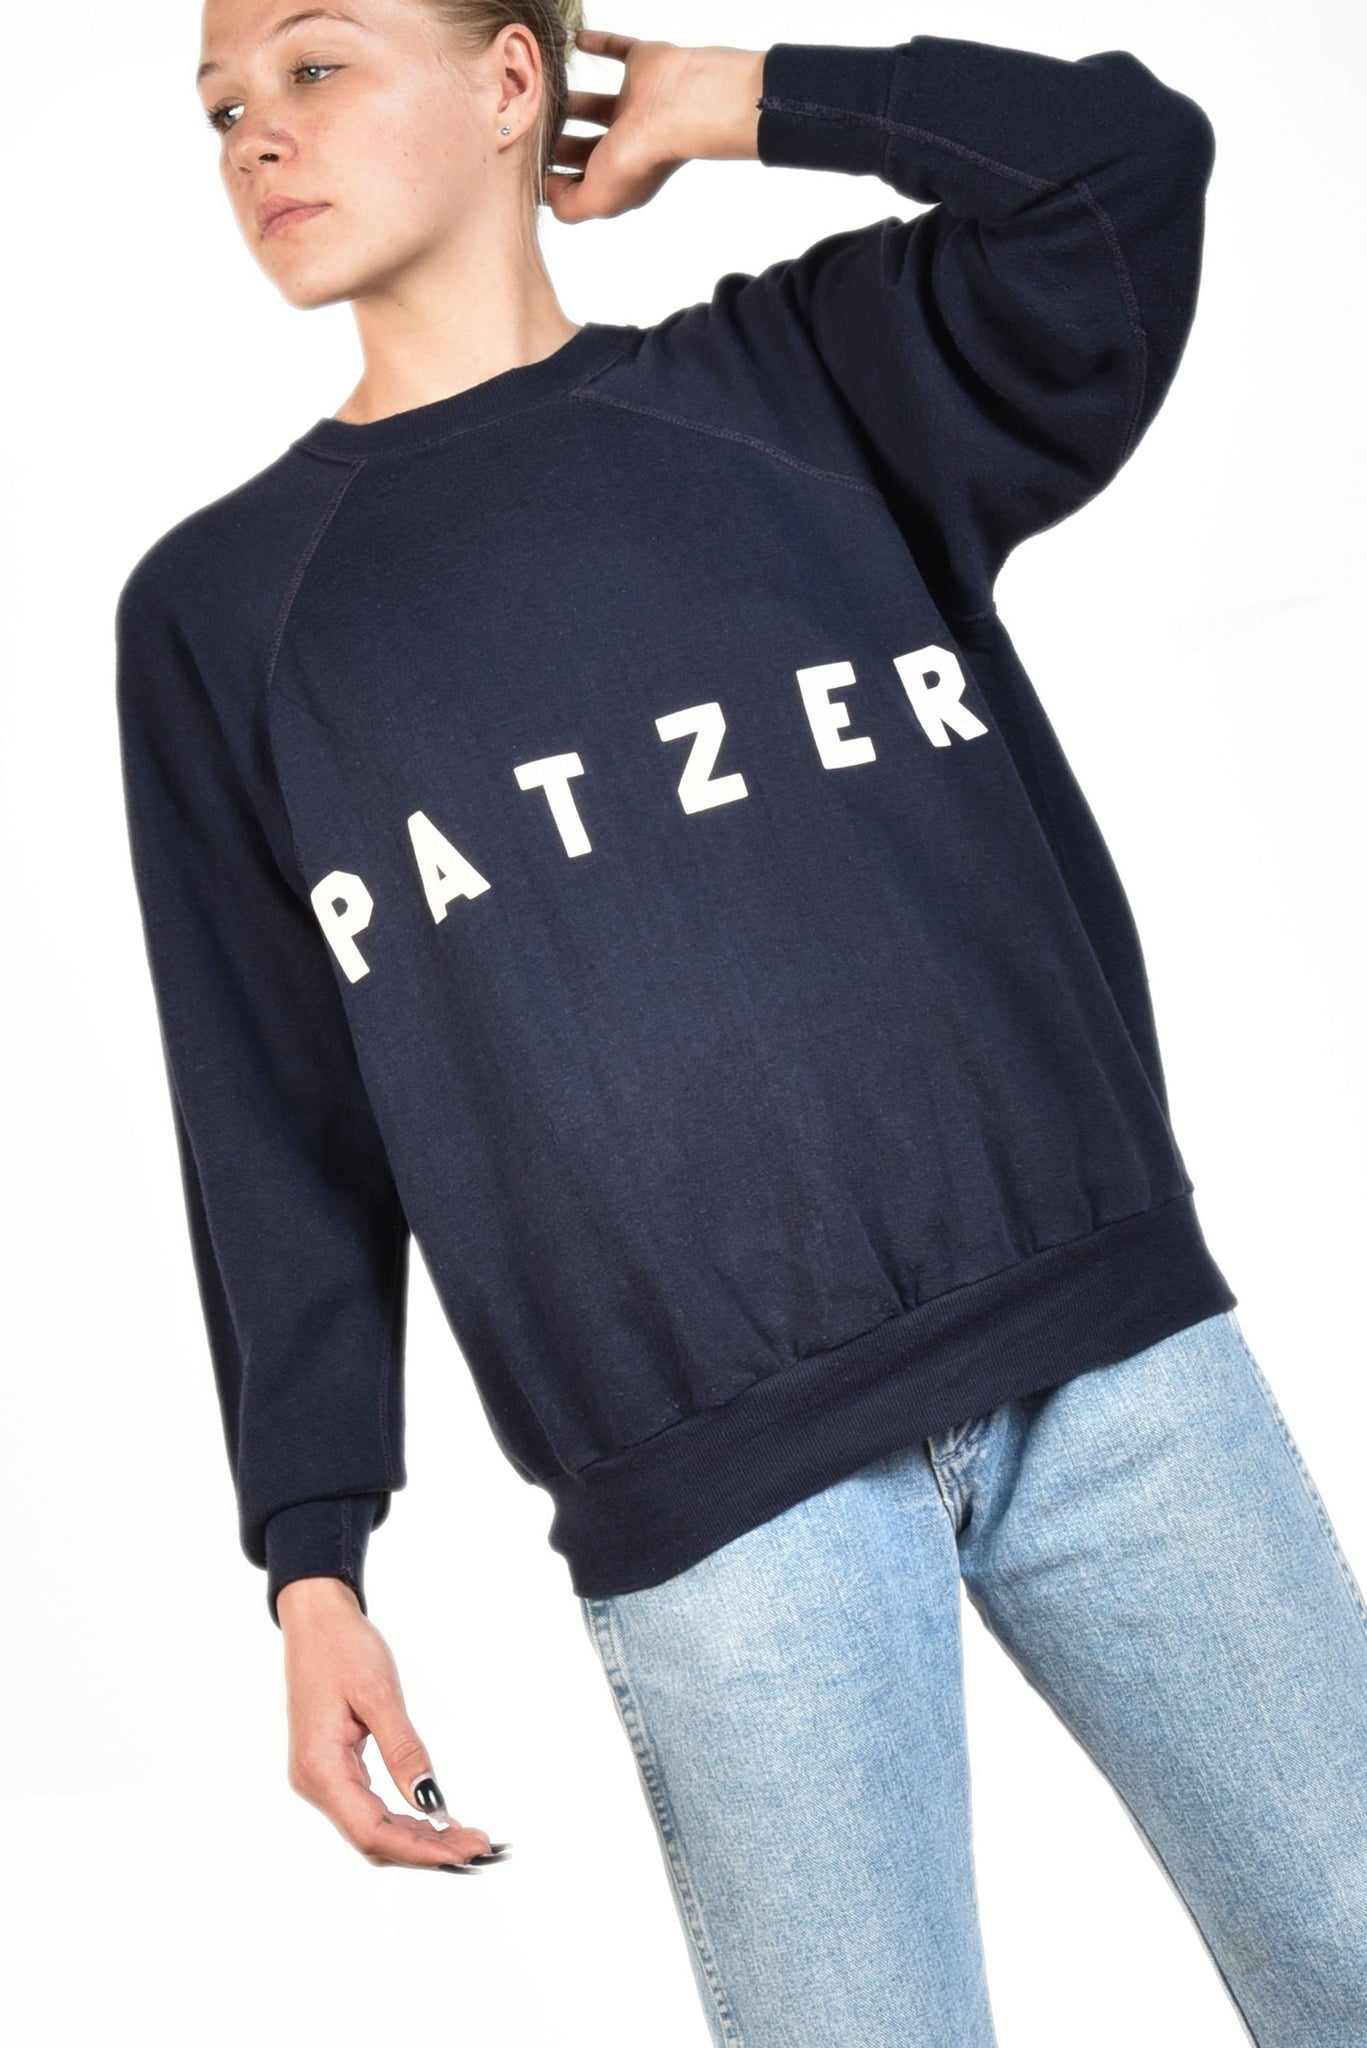 Patzer Feather Soft 70s Raglan Sweatshirt